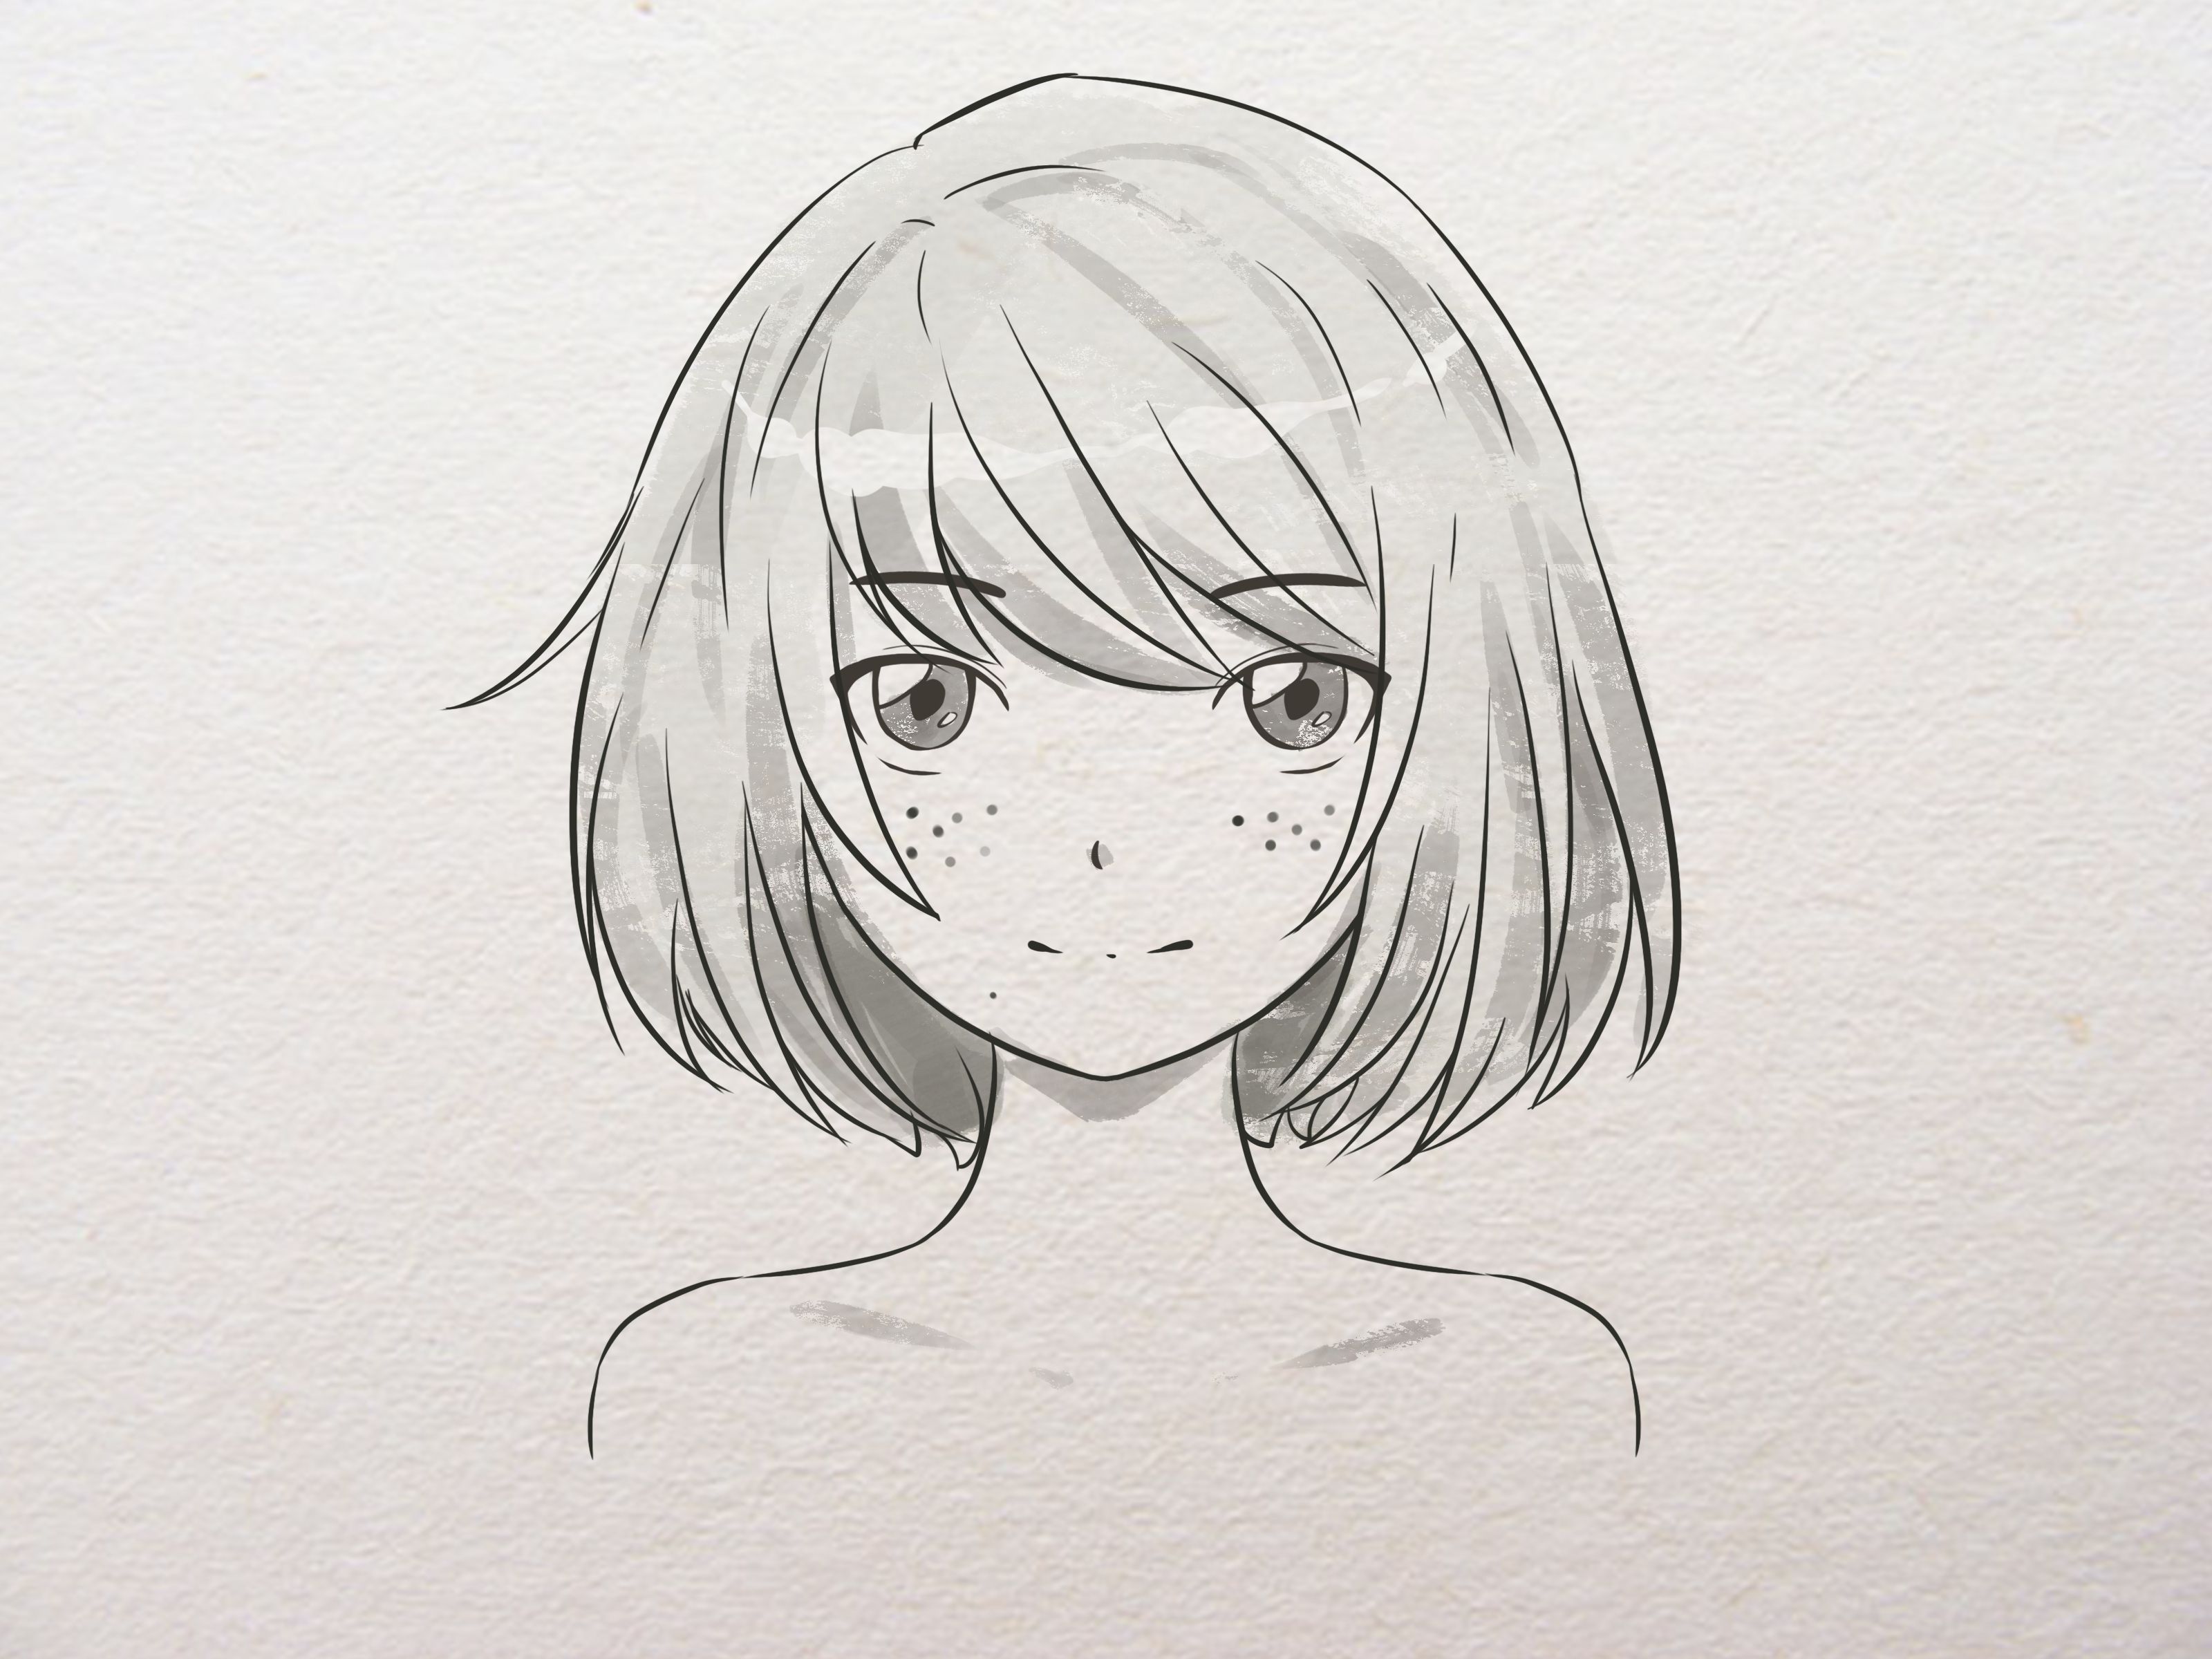 Hướng dẫn cách vẽ nhân vật anime nữ bằng bút chì từ cơ bản đến chuyên nghiệp